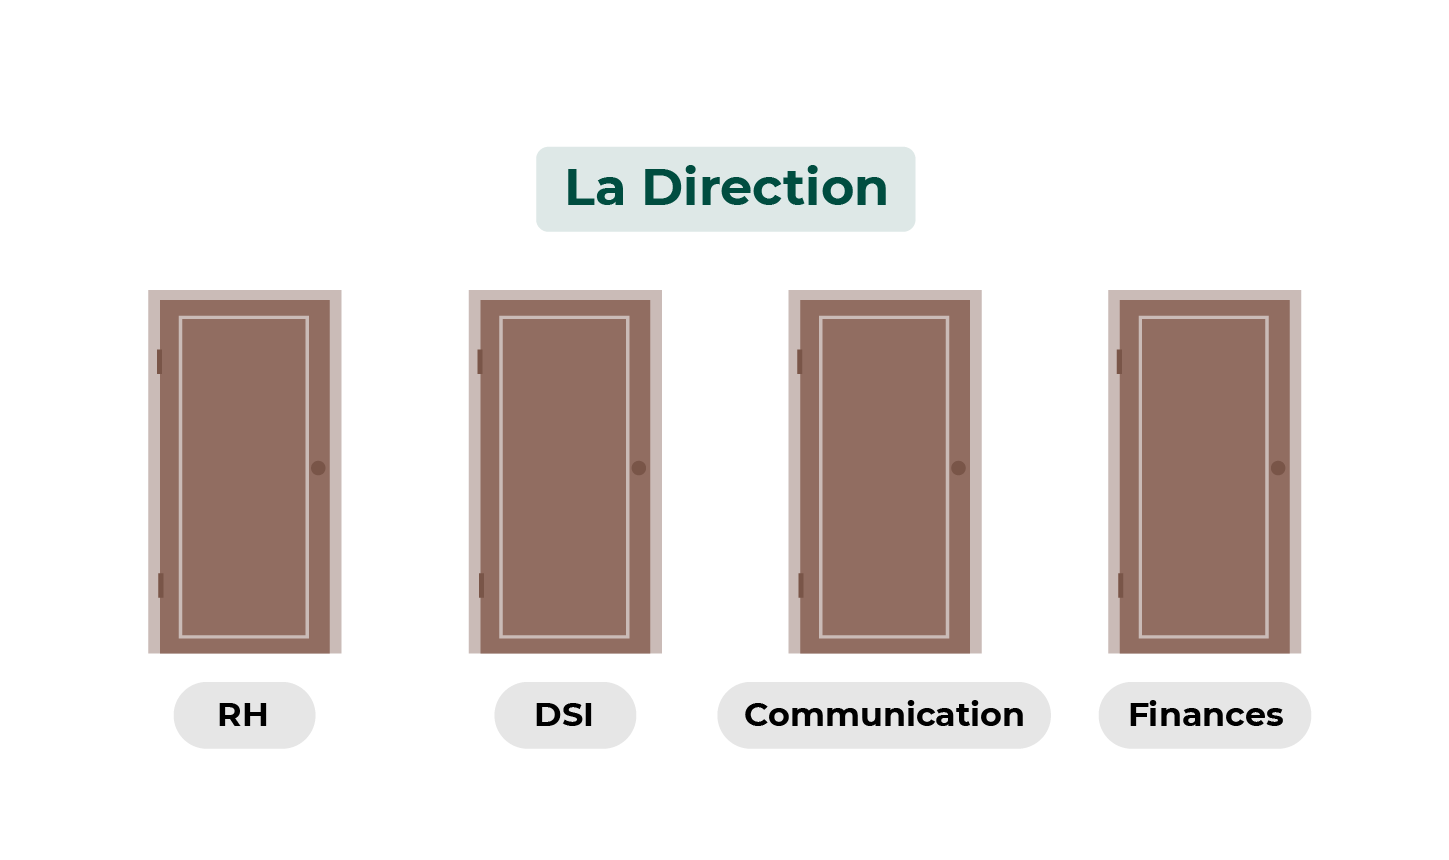 Illustration de 4 silos isolés de la direction. RH, DSI, Communication, Finances